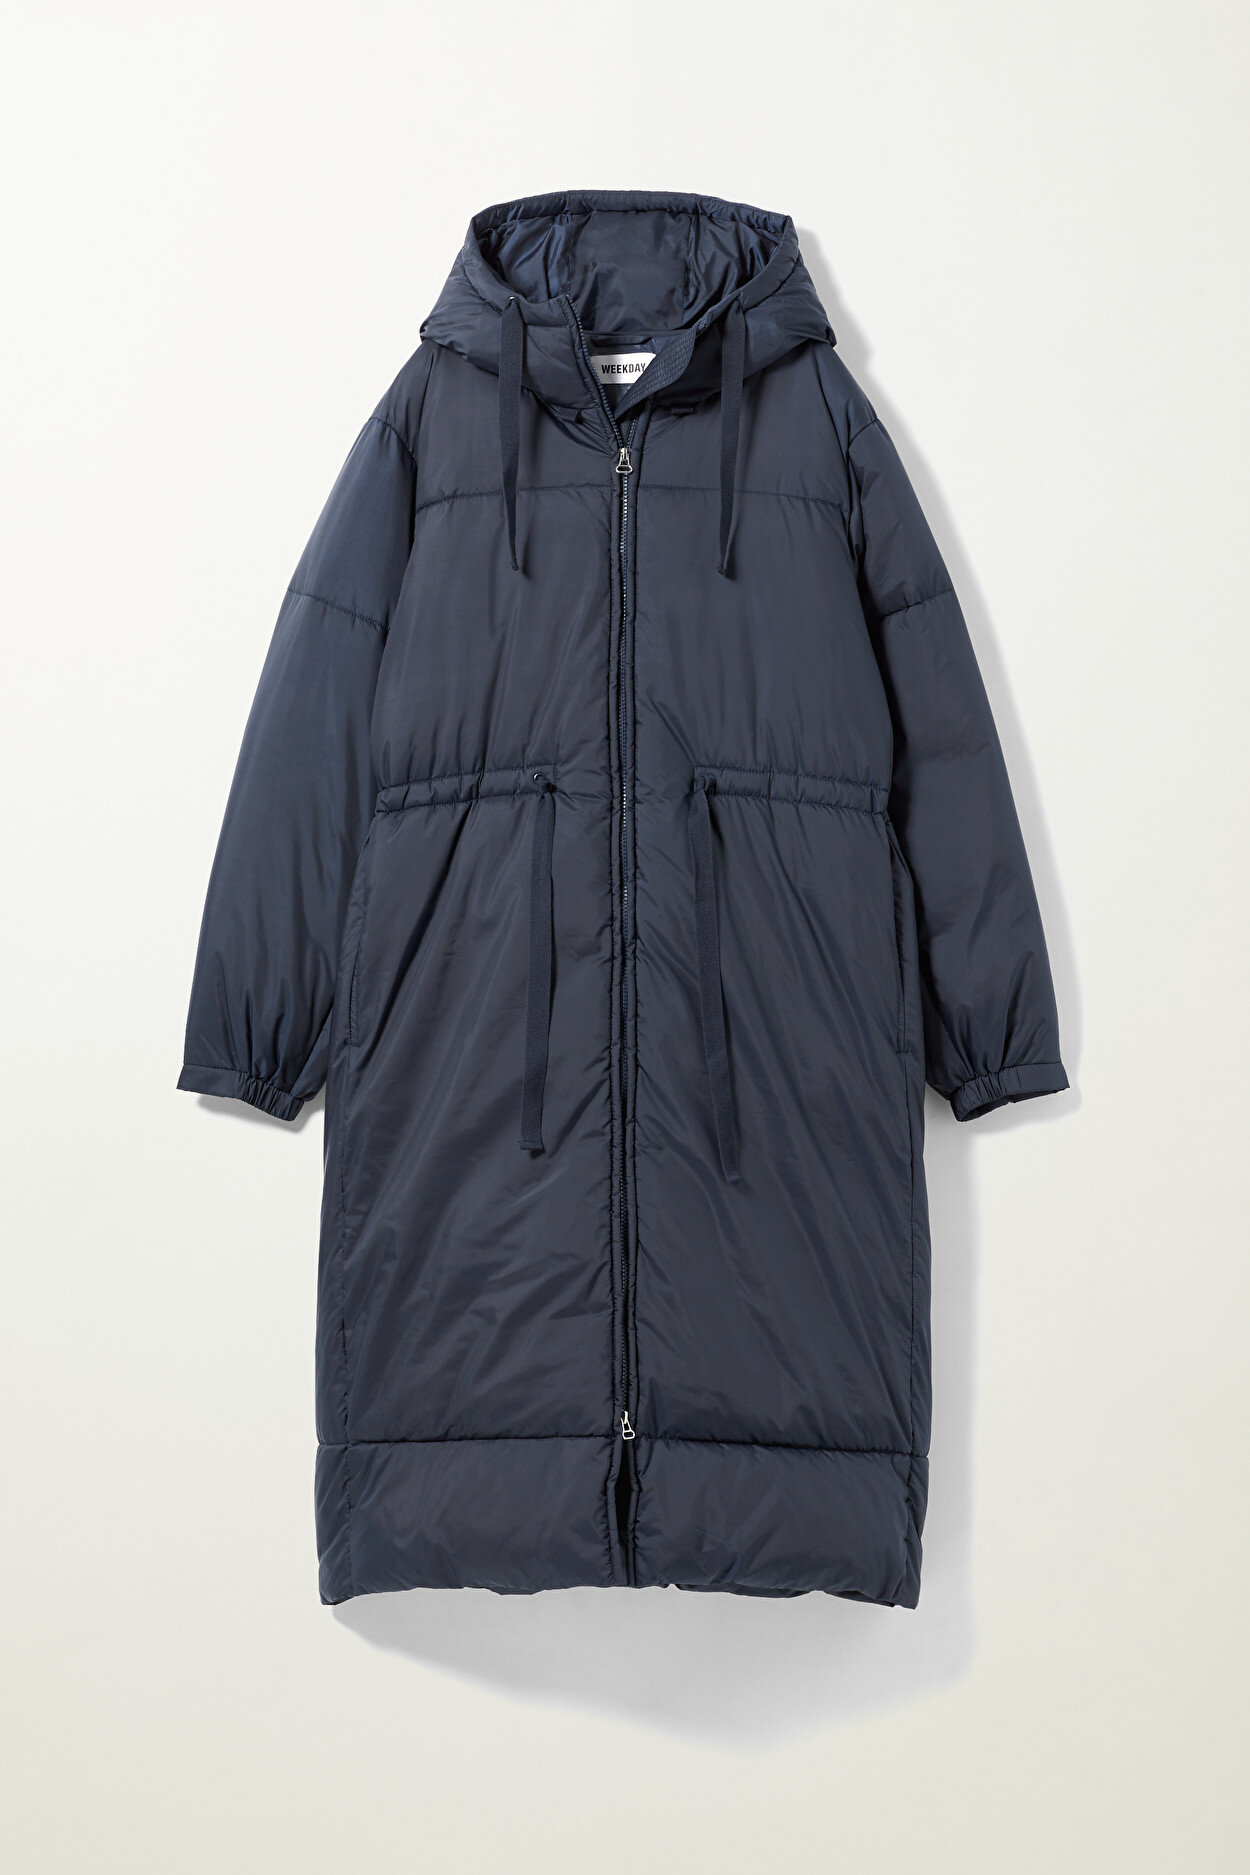 Coat, £65, Weekday